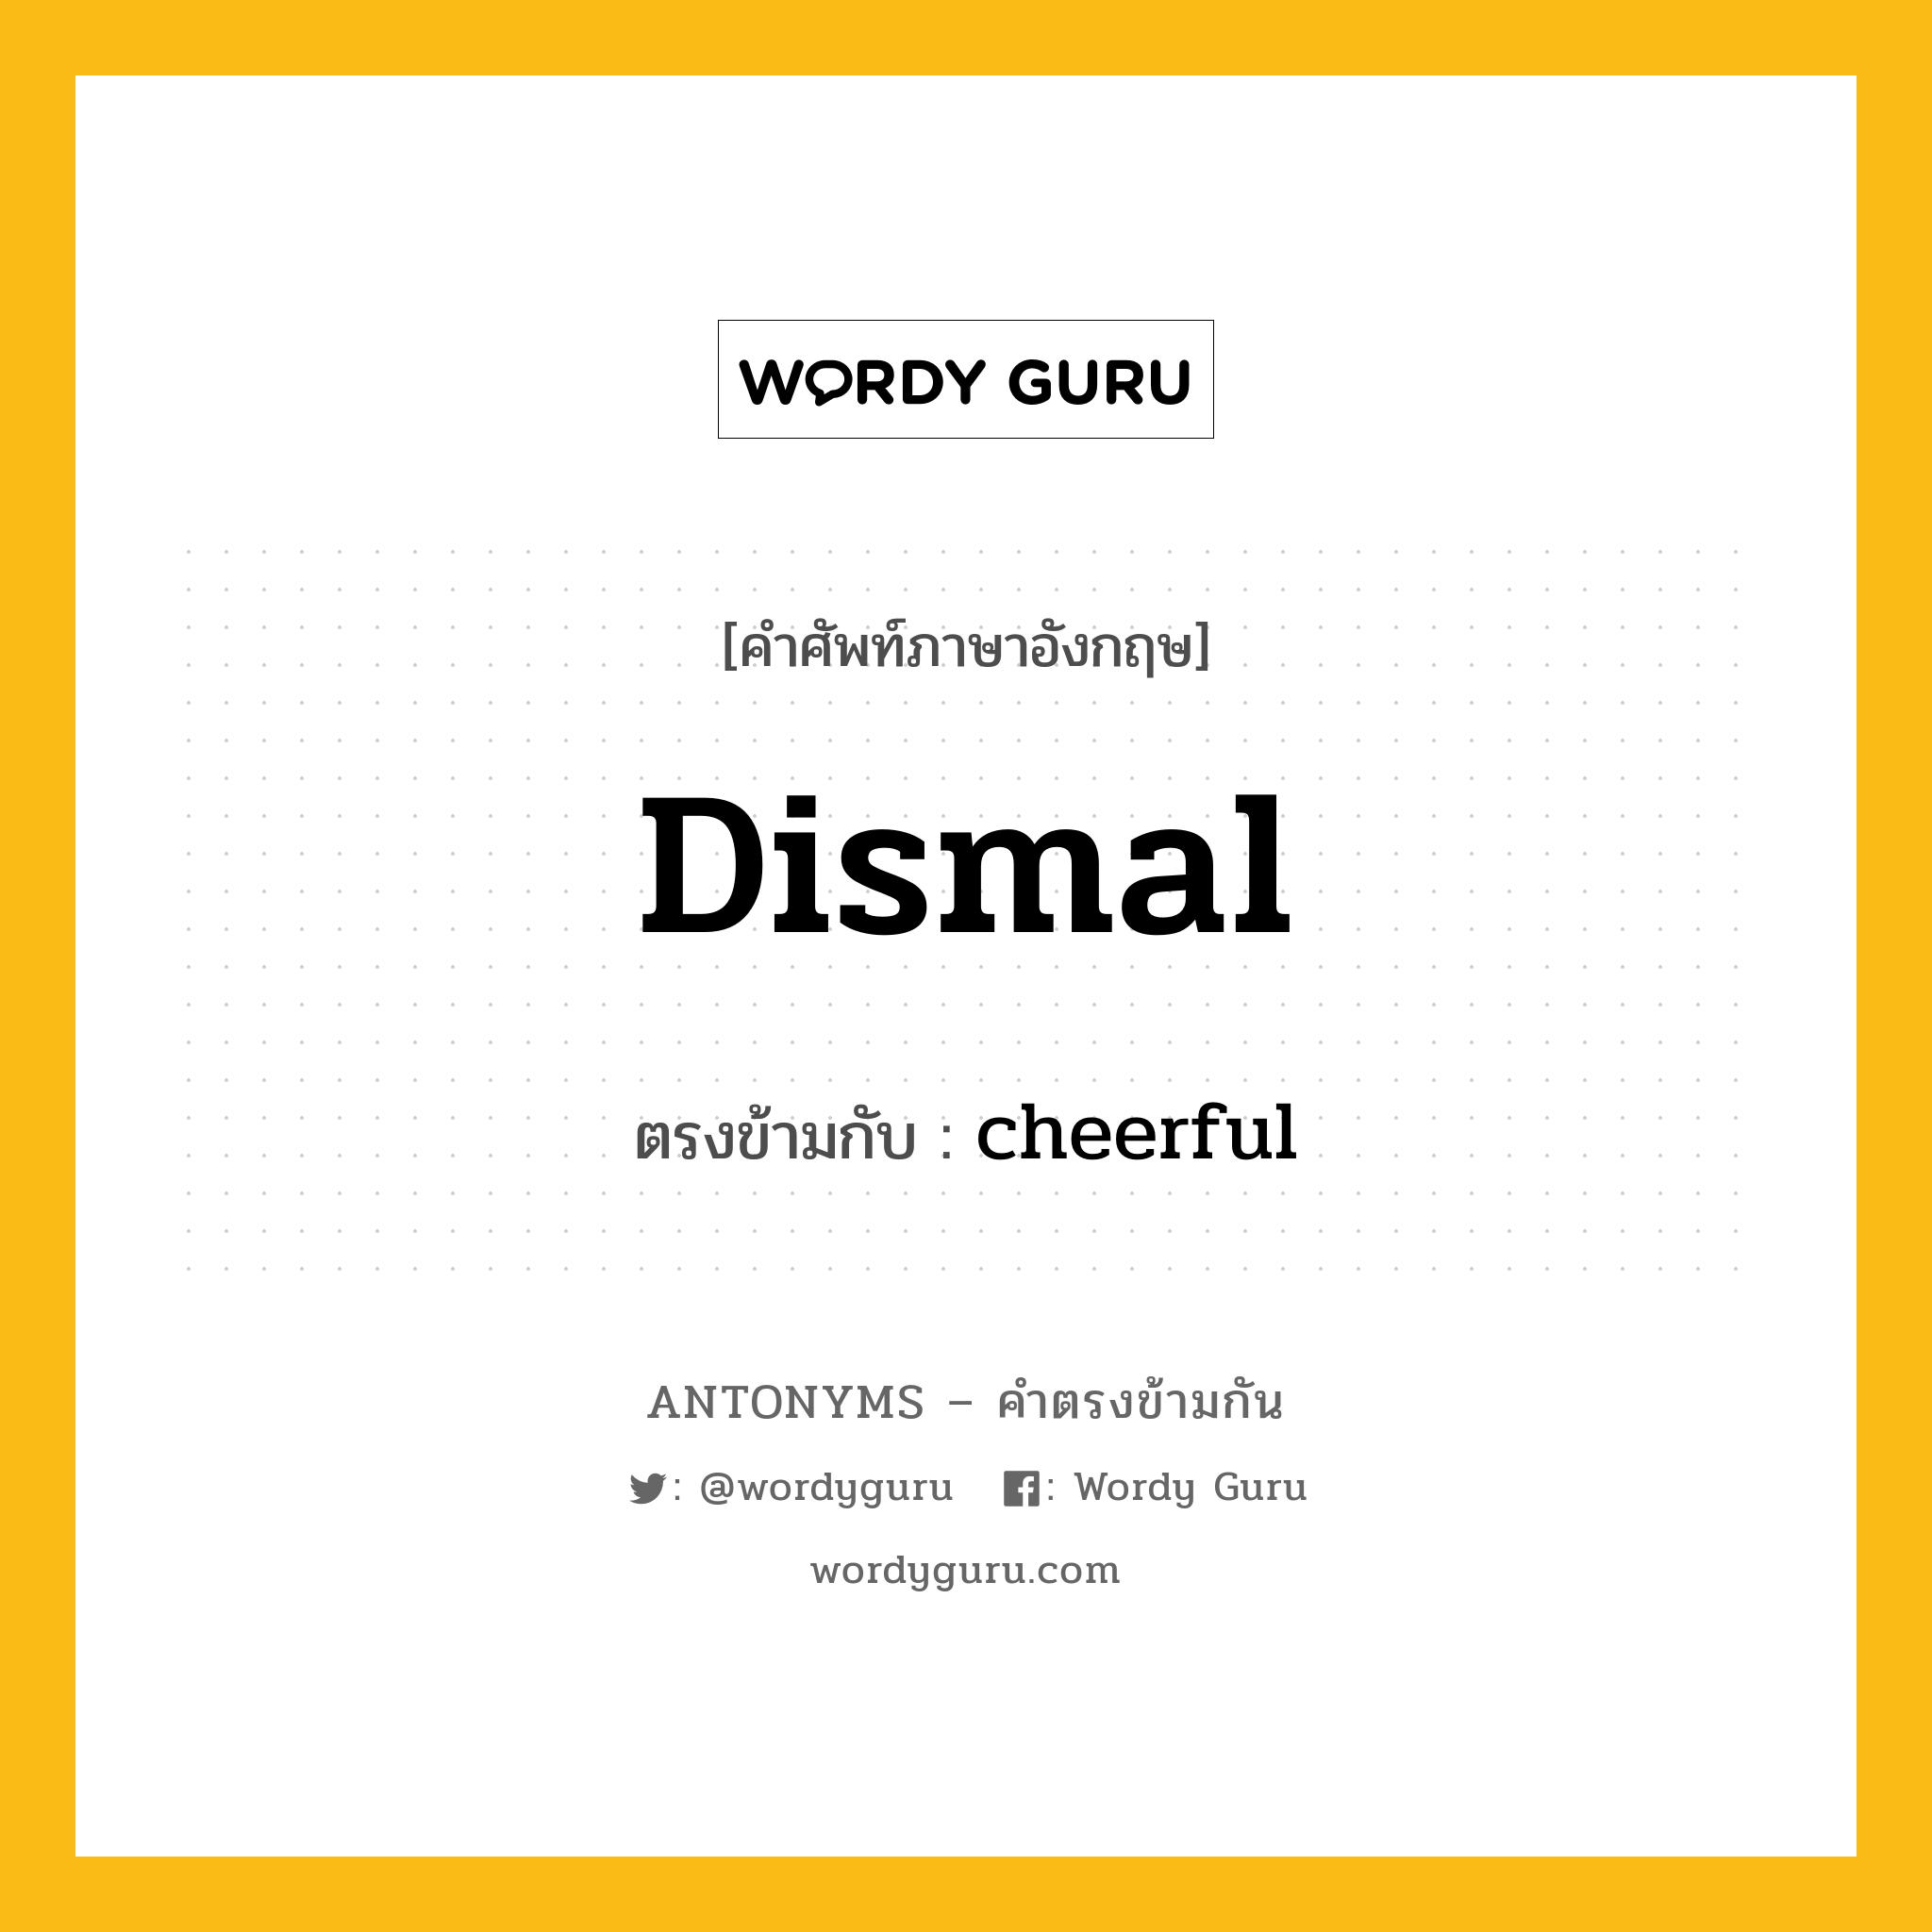 dismal เป็นคำตรงข้ามกับคำไหนบ้าง?, คำศัพท์ภาษาอังกฤษ dismal ตรงข้ามกับ cheerful หมวด cheerful